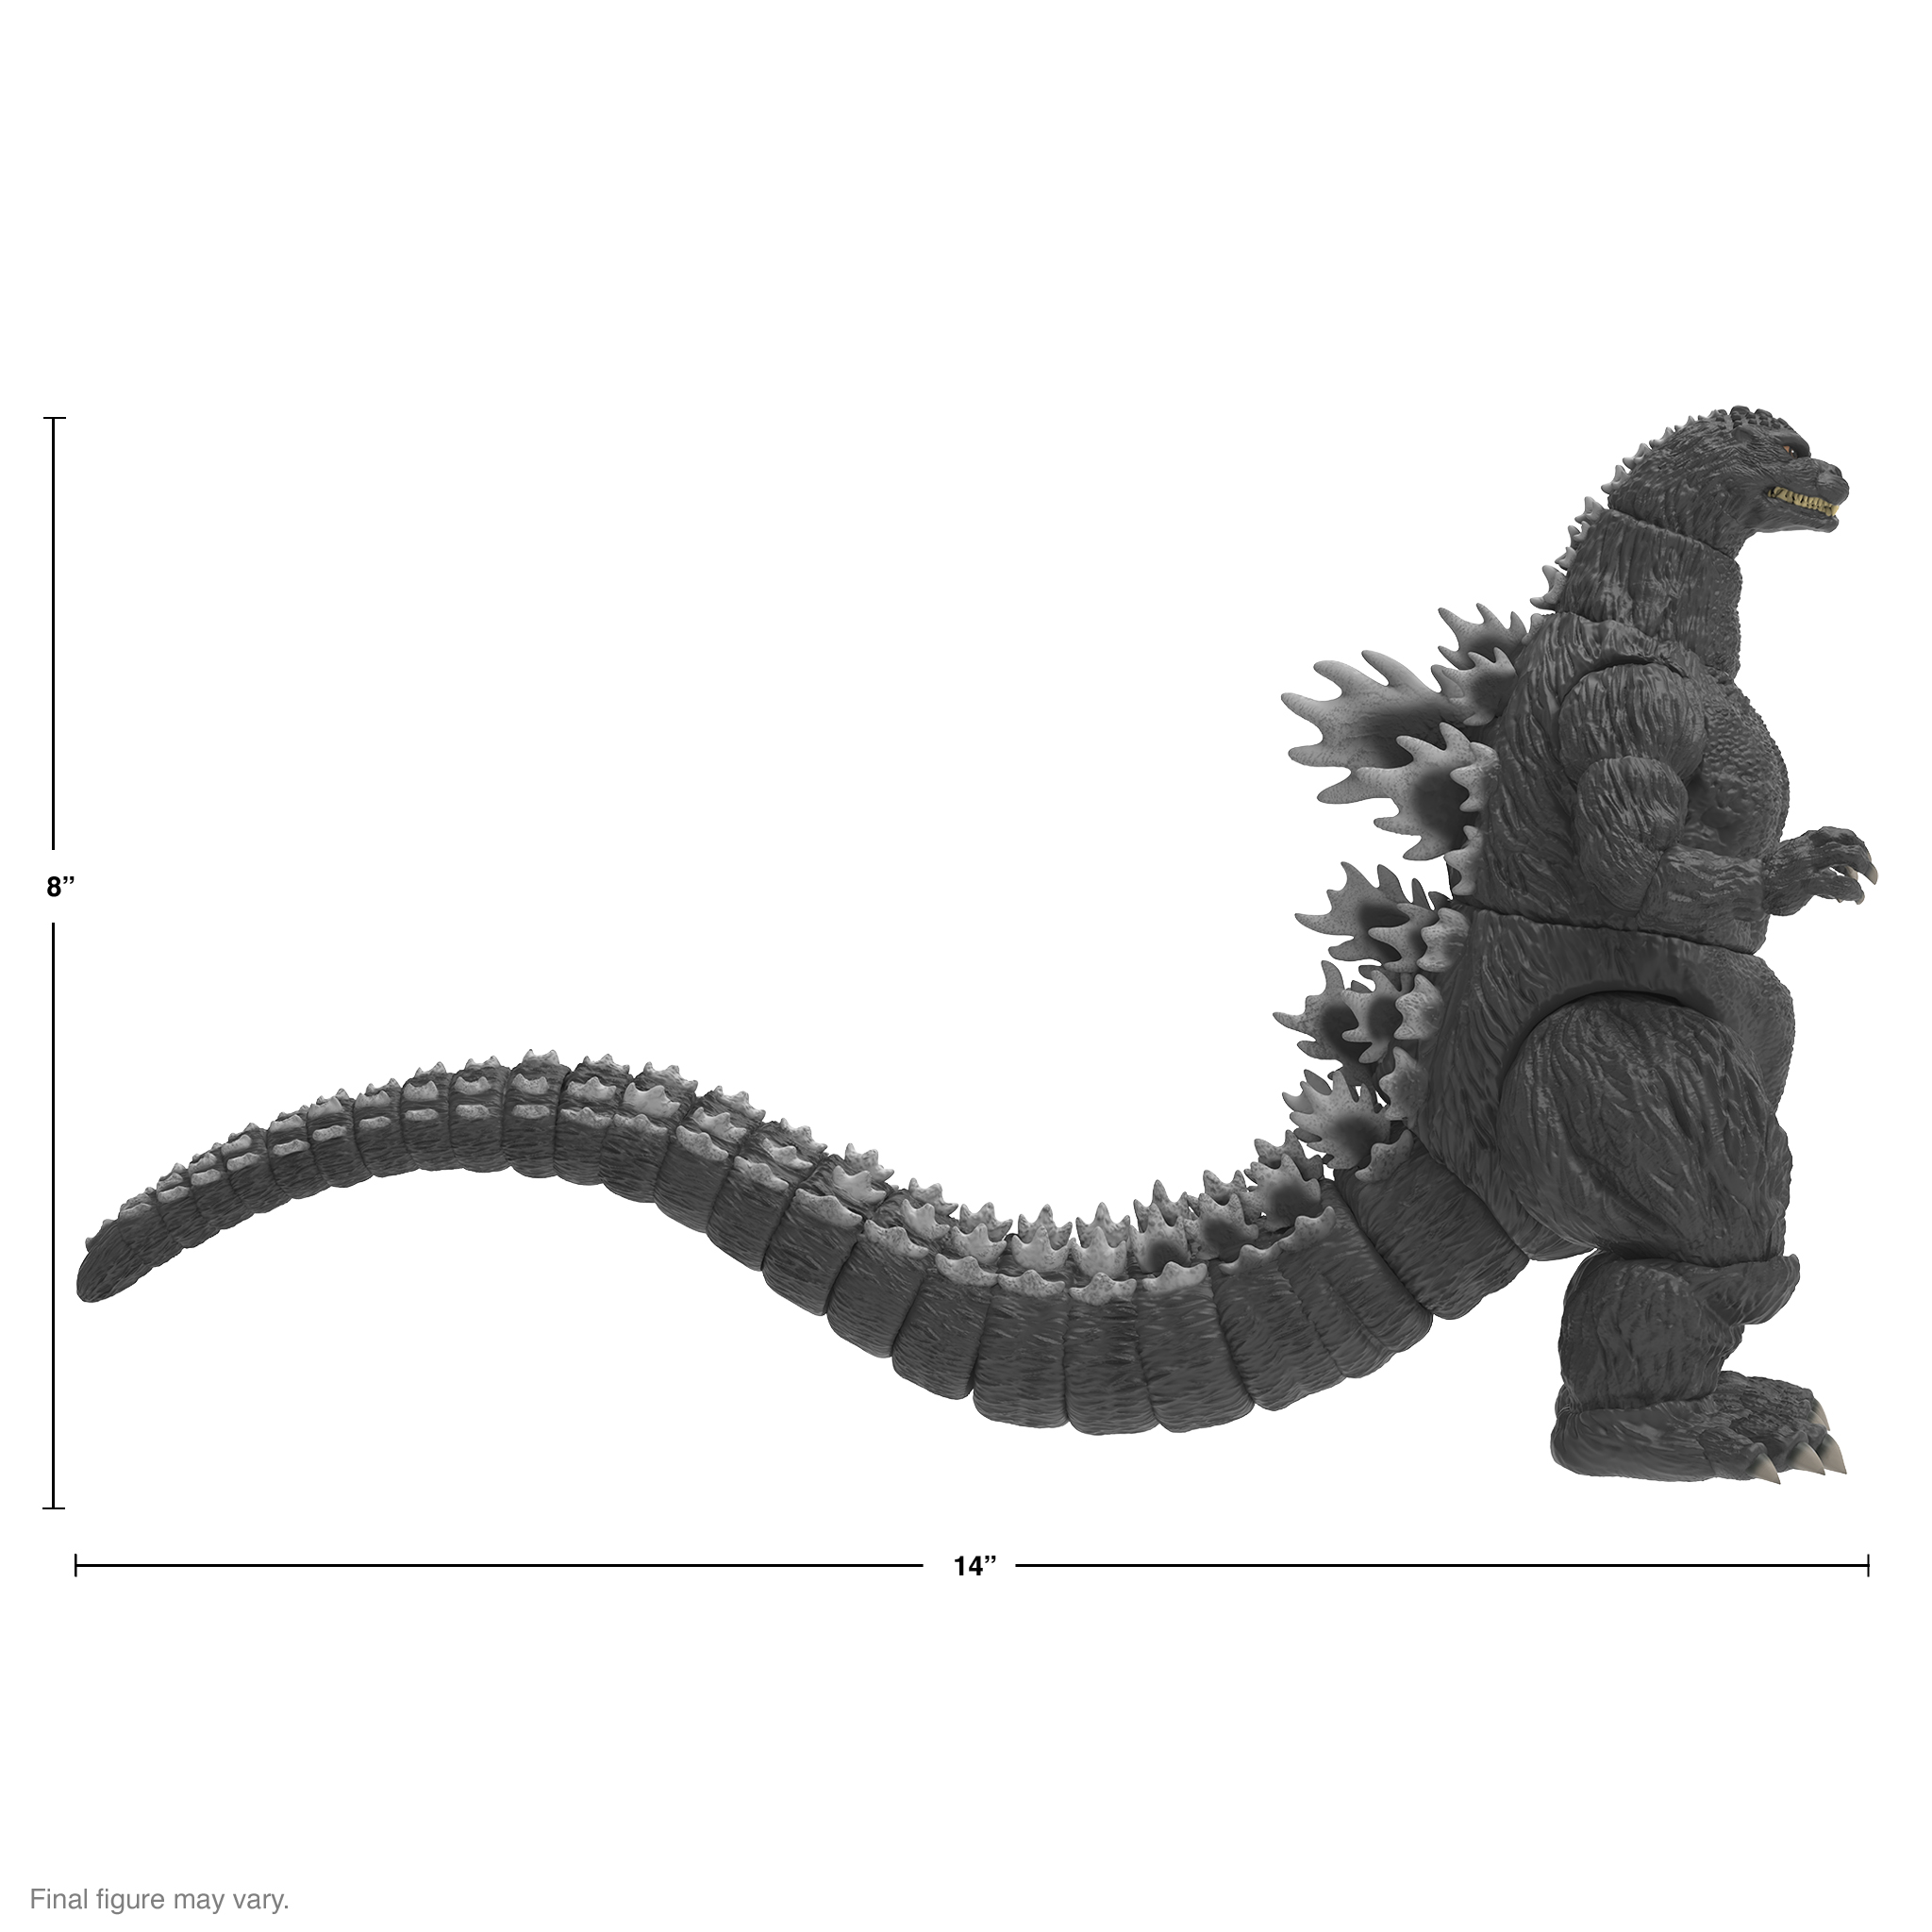 Super7 - ULTIMATES! 8 in Plastic Toho Godzilla Action Figure - HeiSei Godzilla - Multicolor